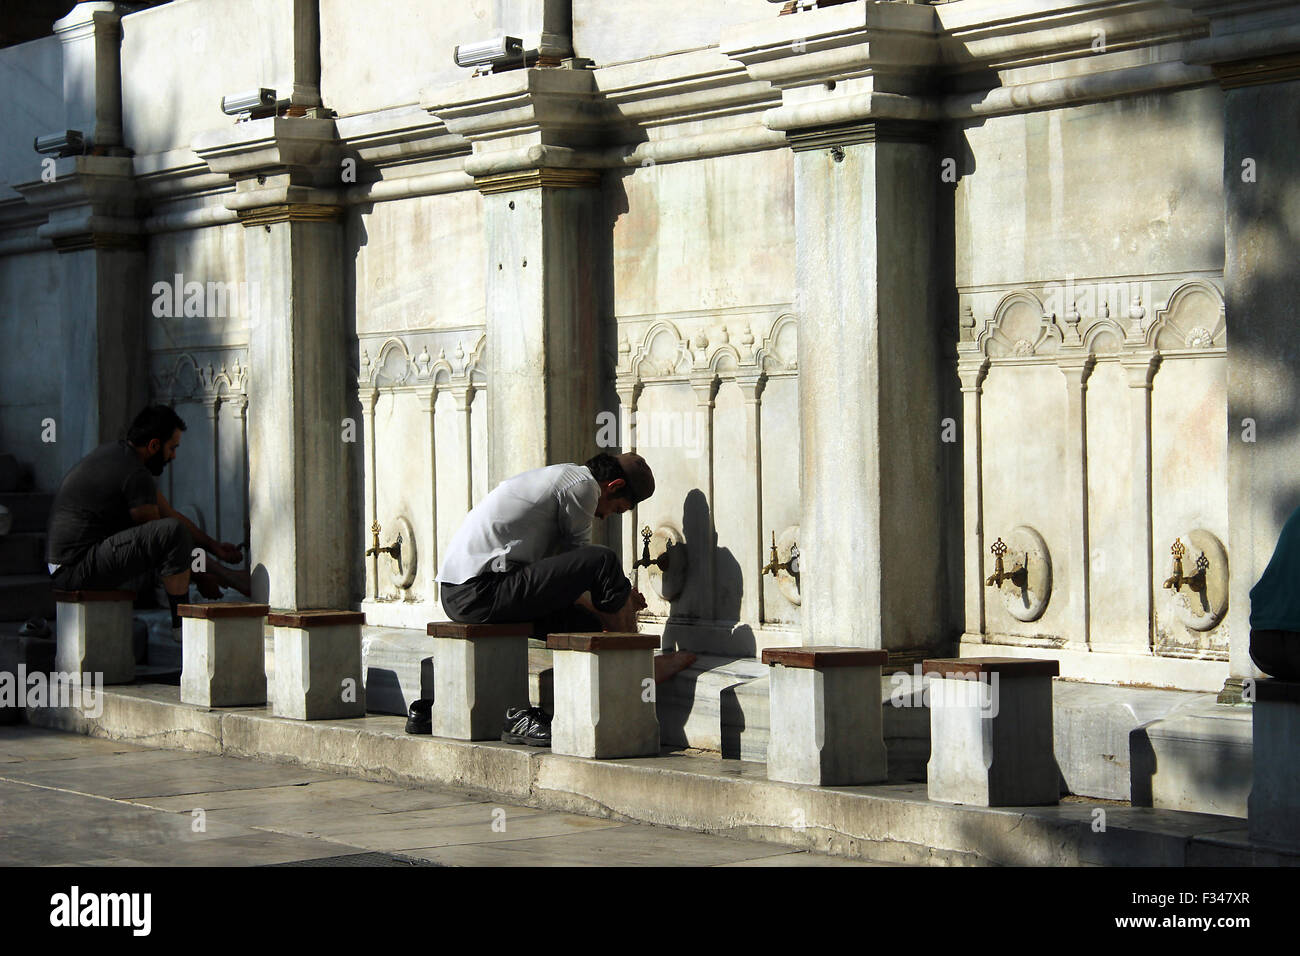 Les gens laver rituellement dans une mosquée cour intérieure. Banque D'Images